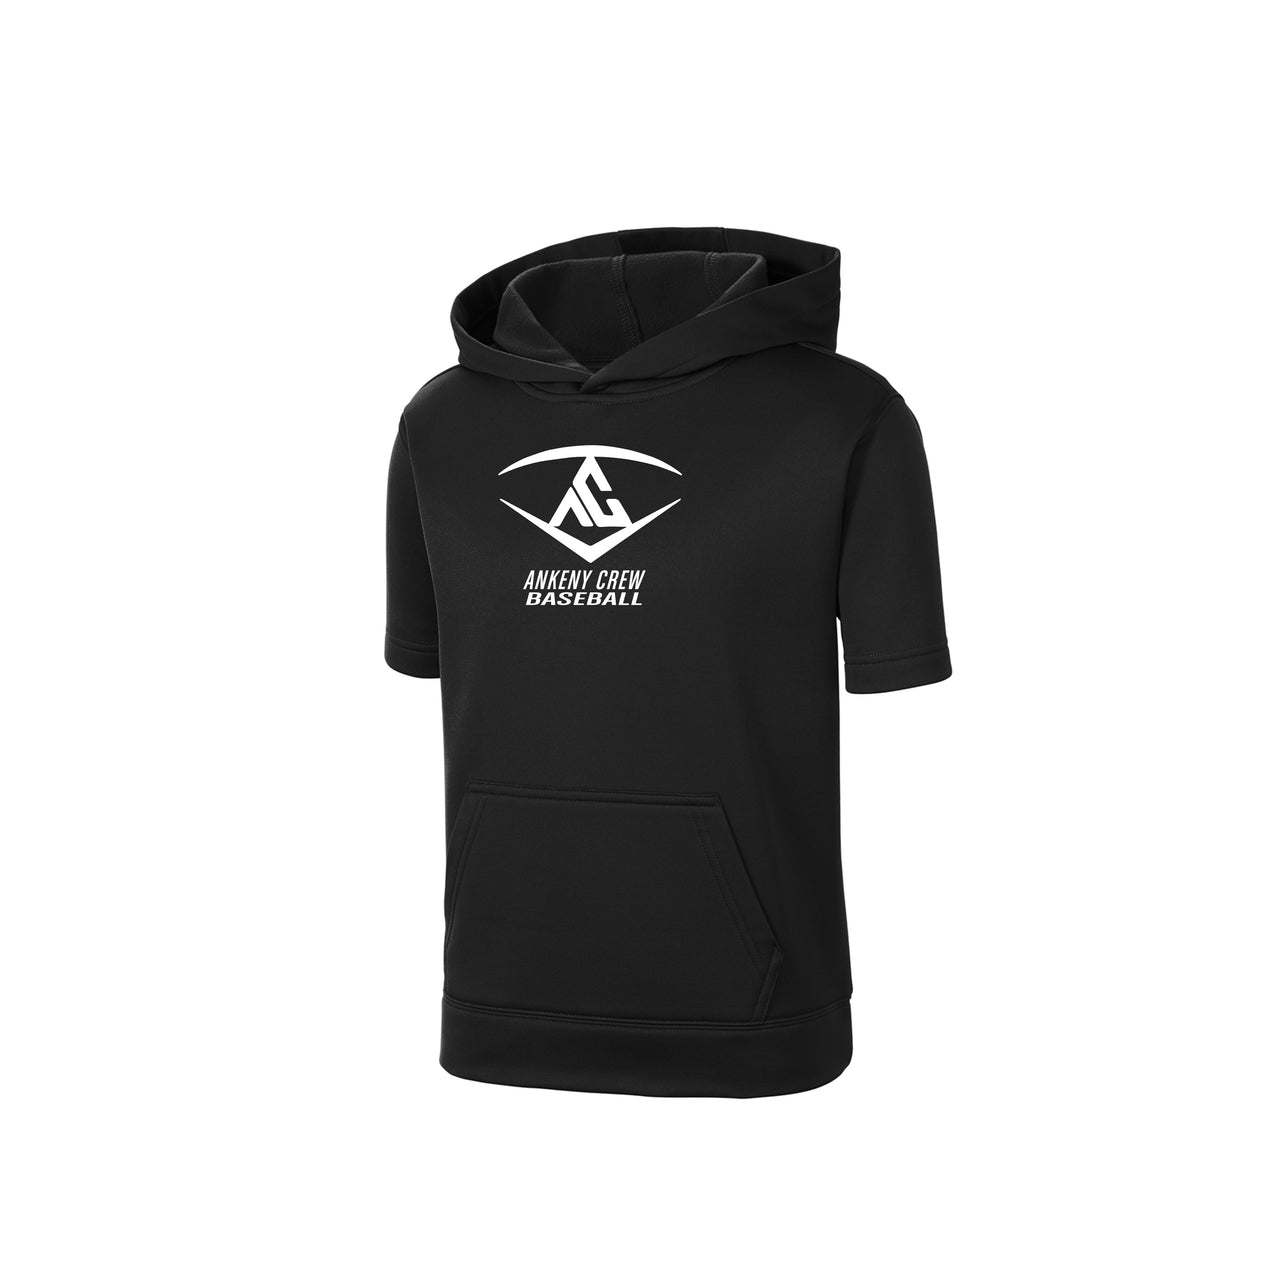 Youth - Fleece short sleeve hoodie  - (Ankeny Crew Baseball)